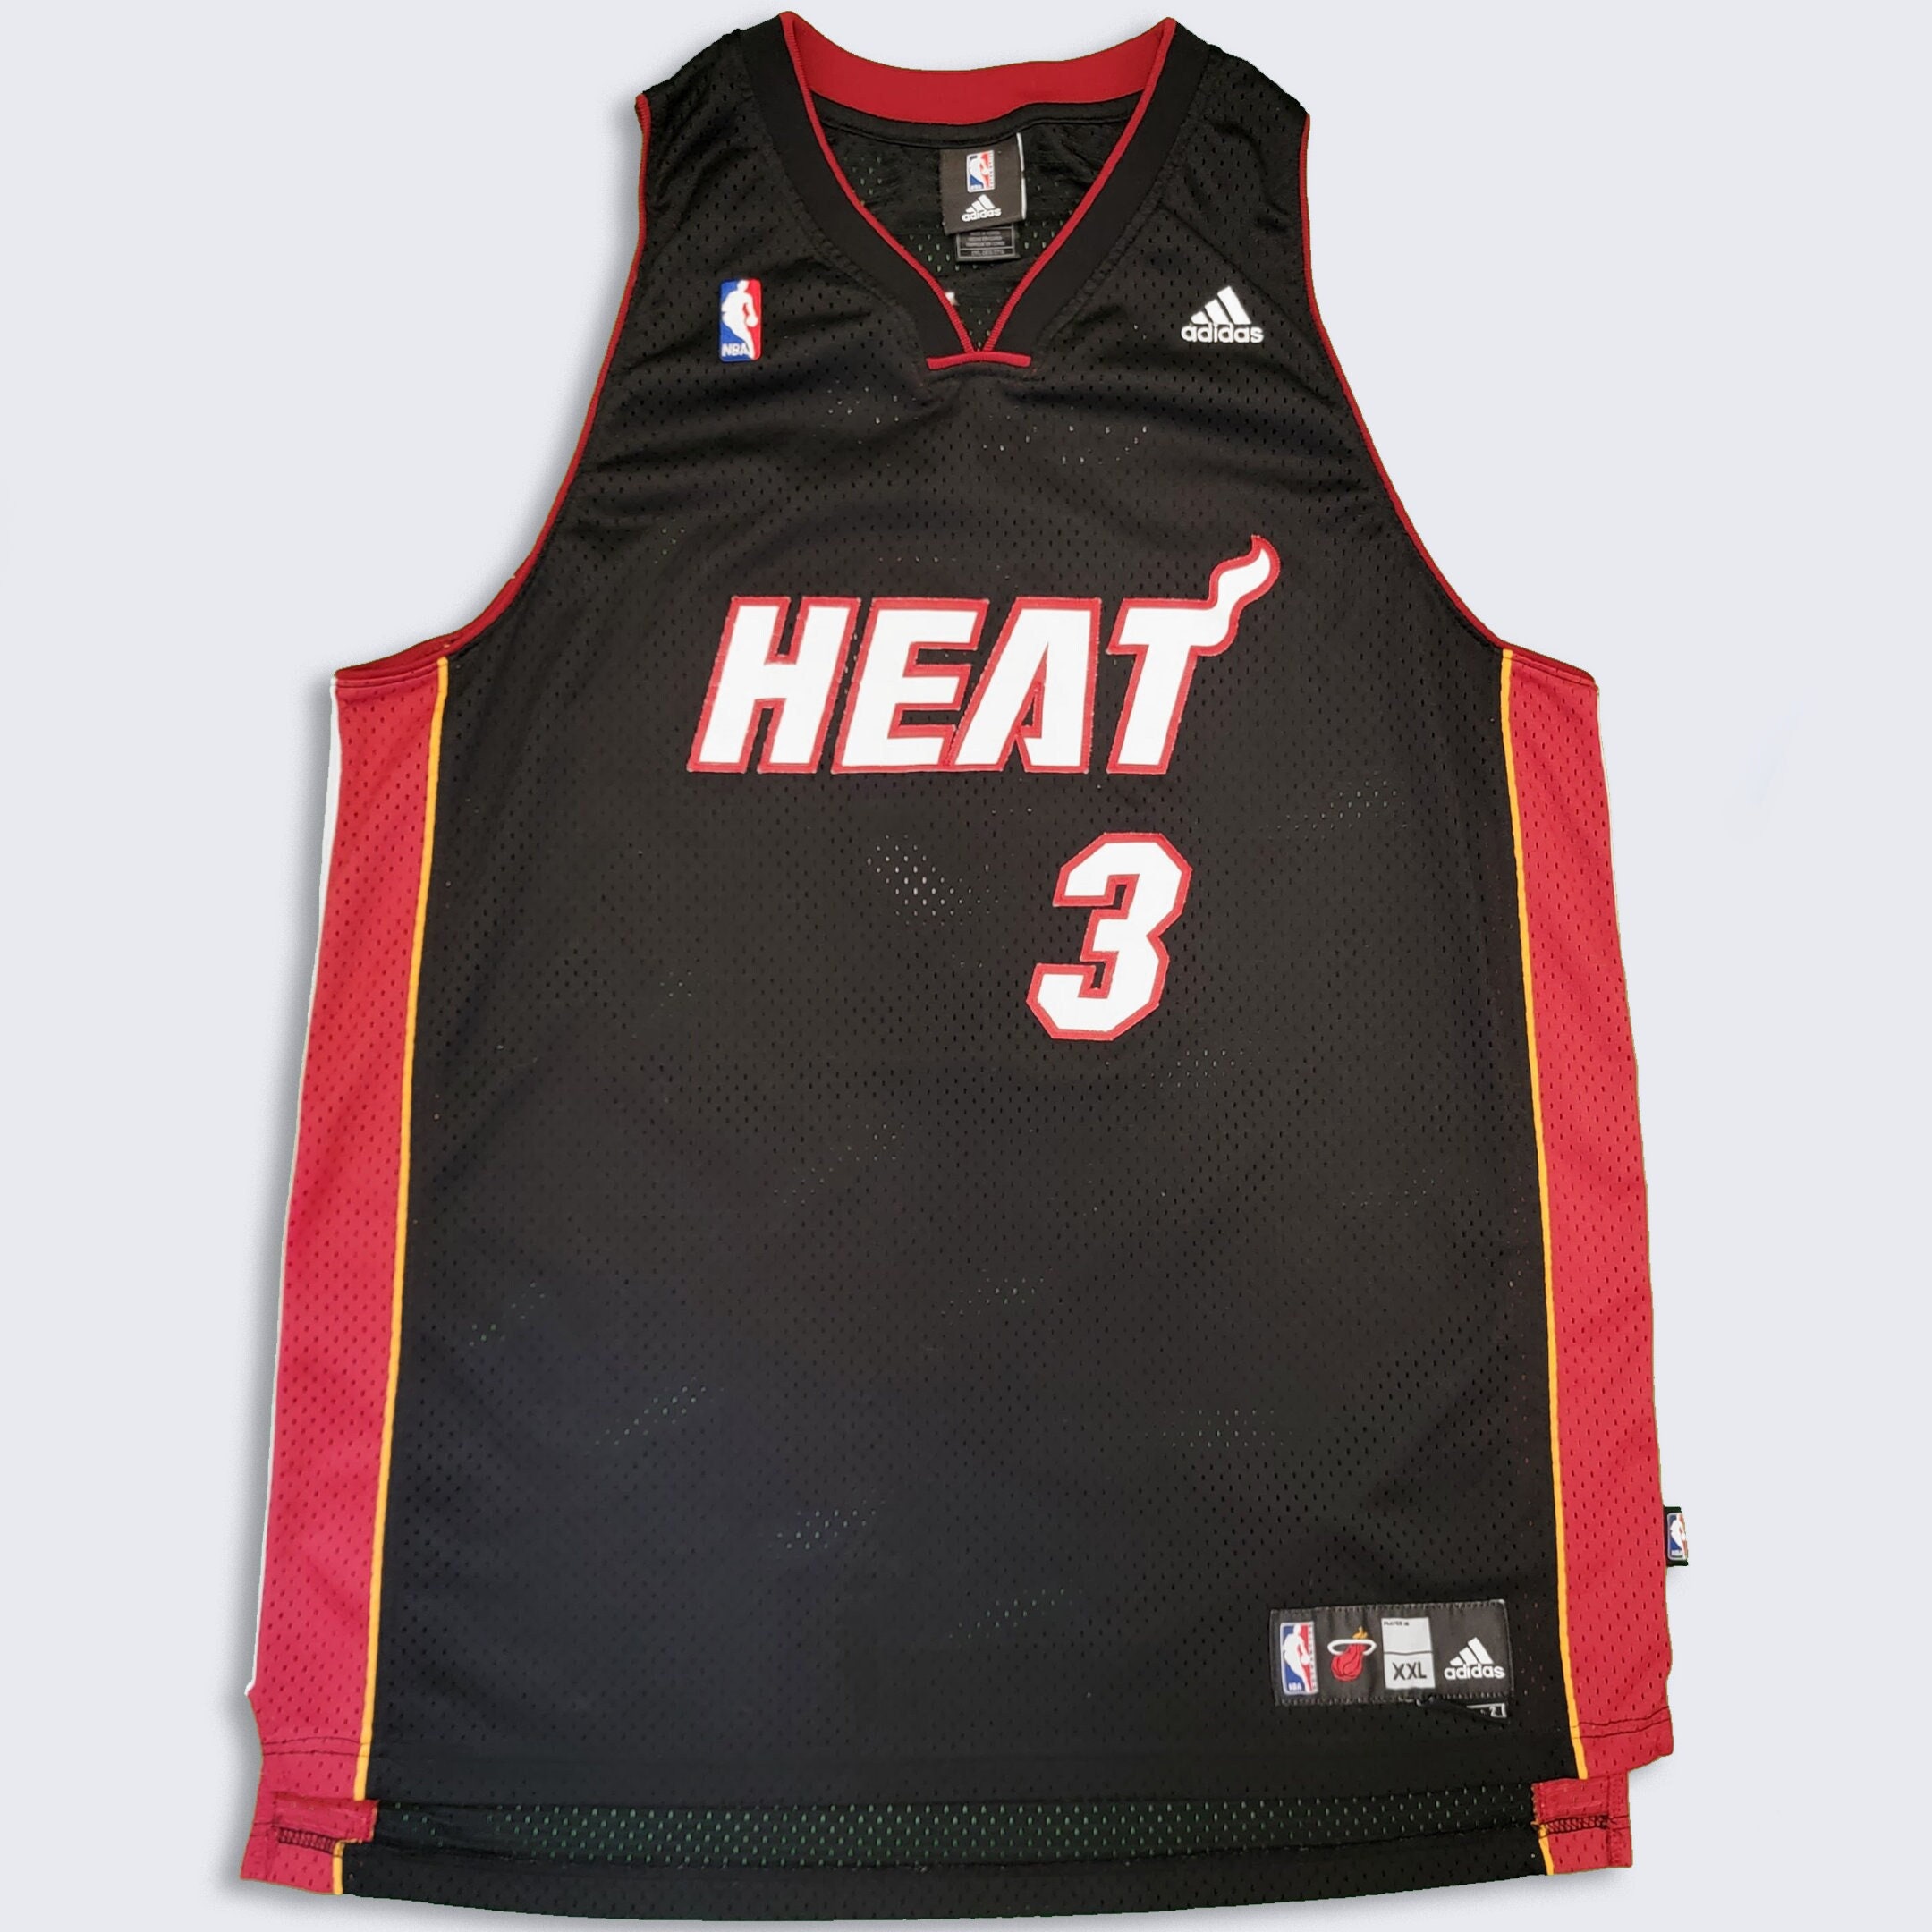 Dwyane Wade Miami Heat Nike City Edition Sponsor Swingman Jersey